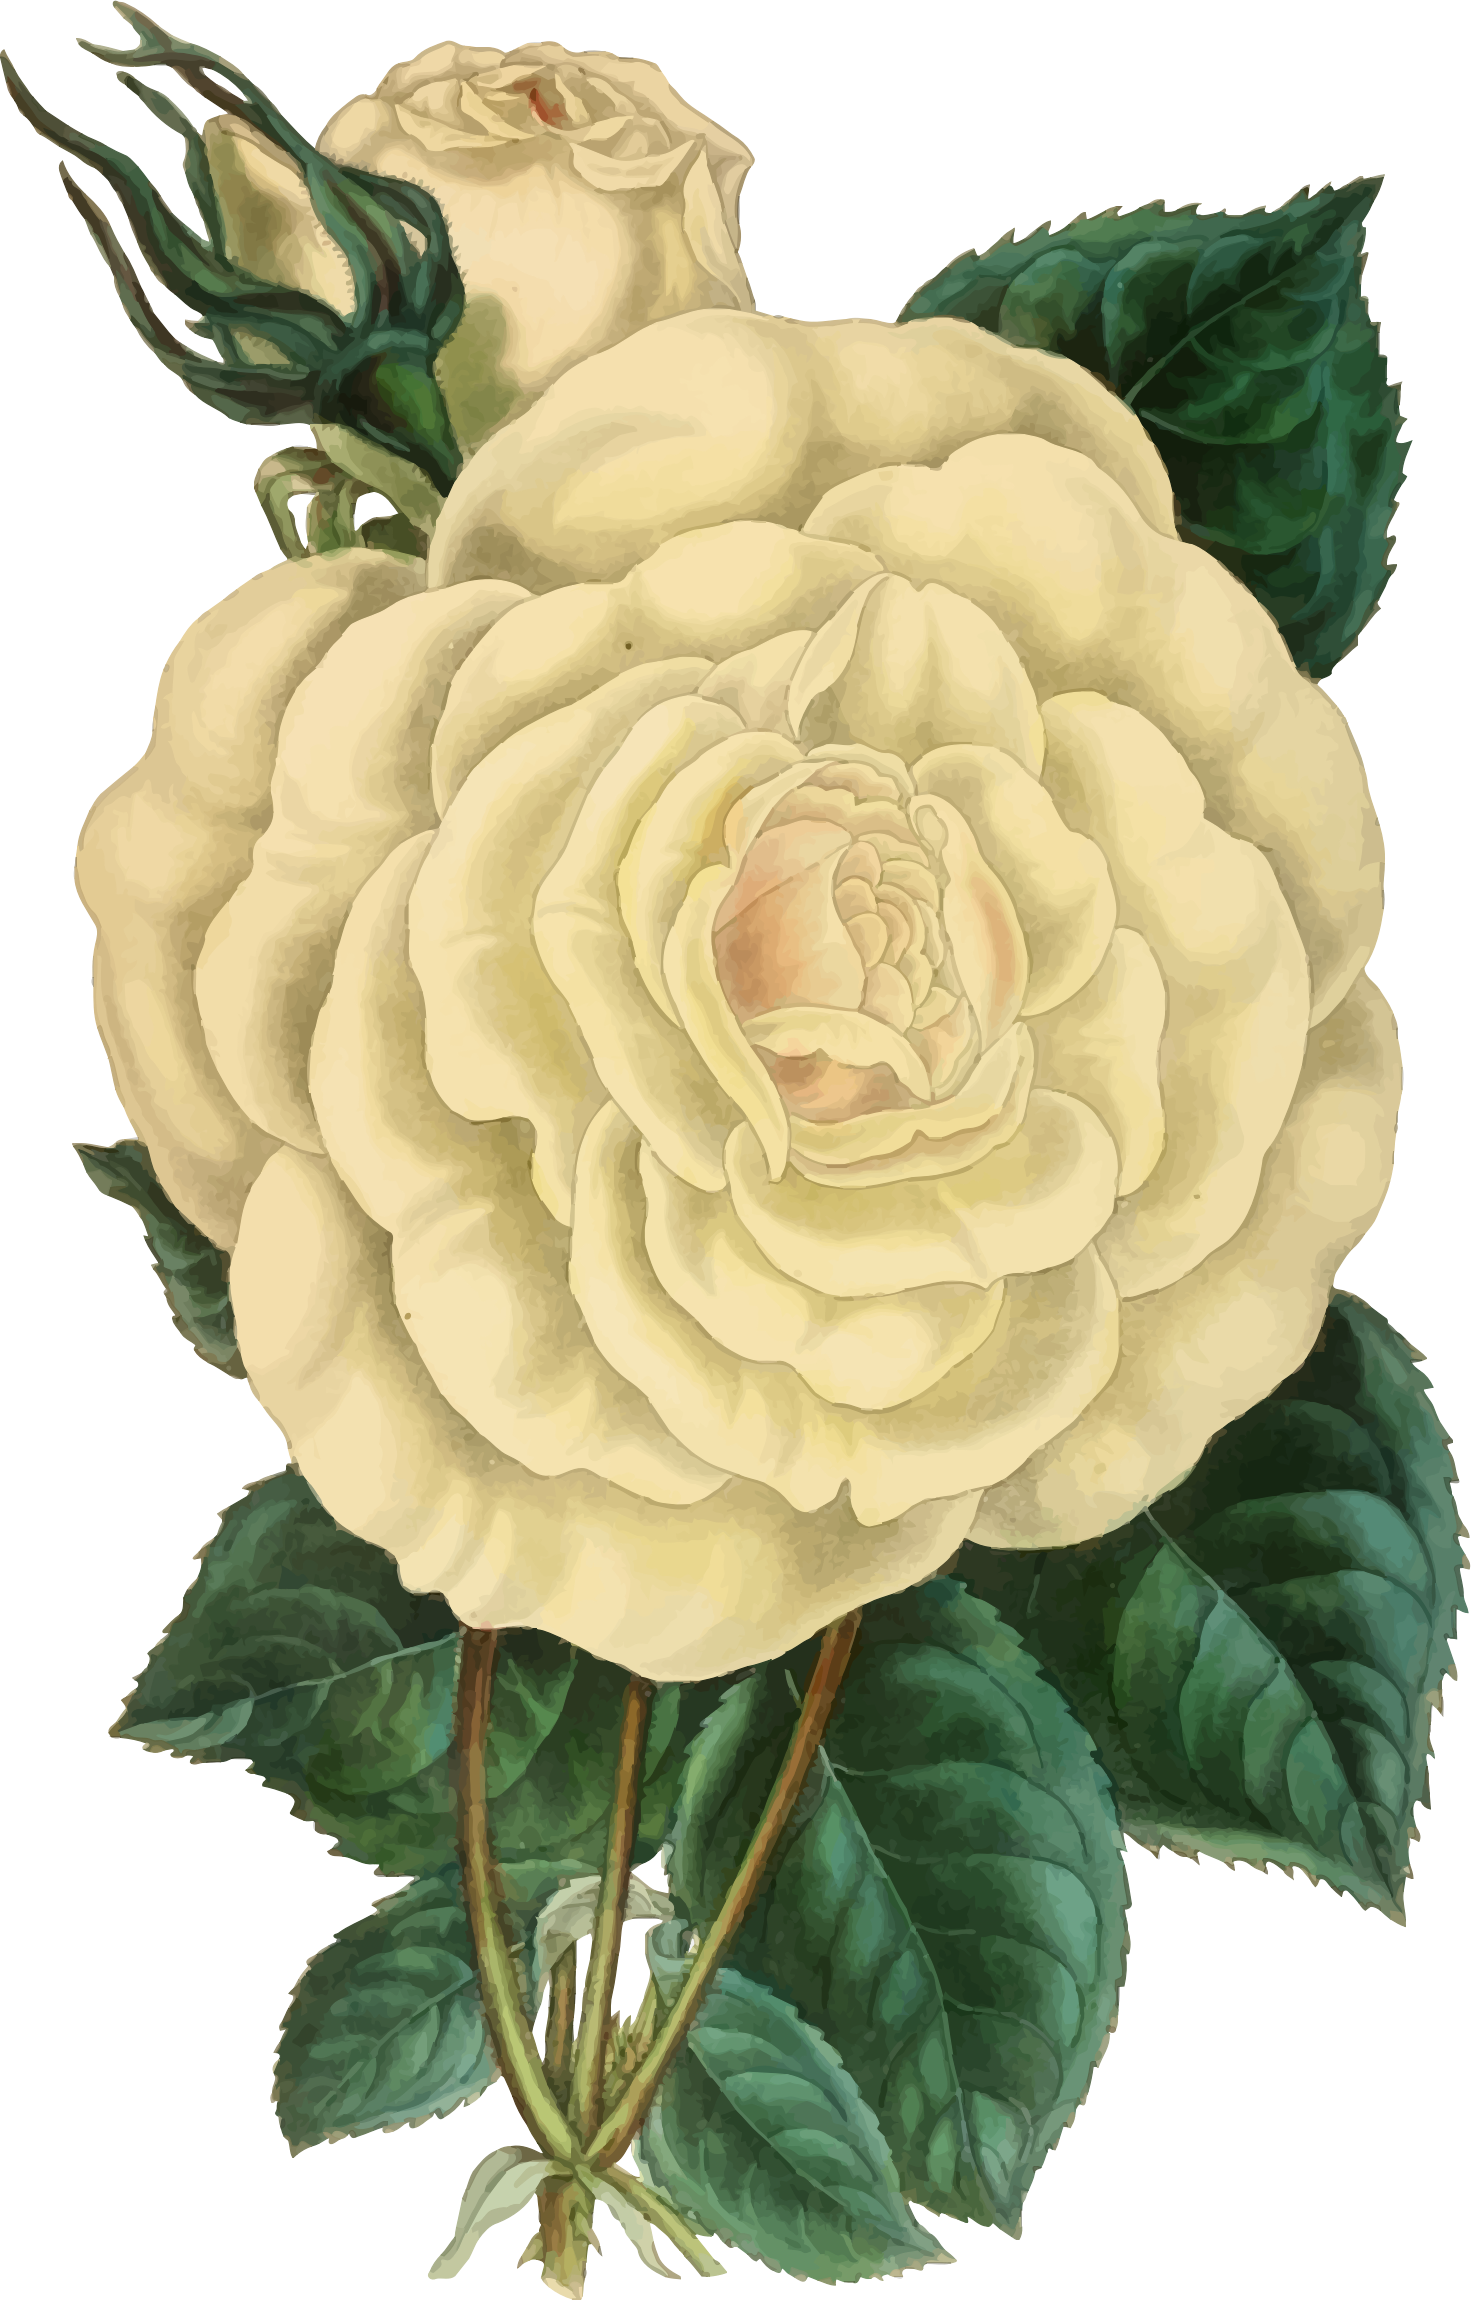 Vintage rose big image. Clipart roses illustration